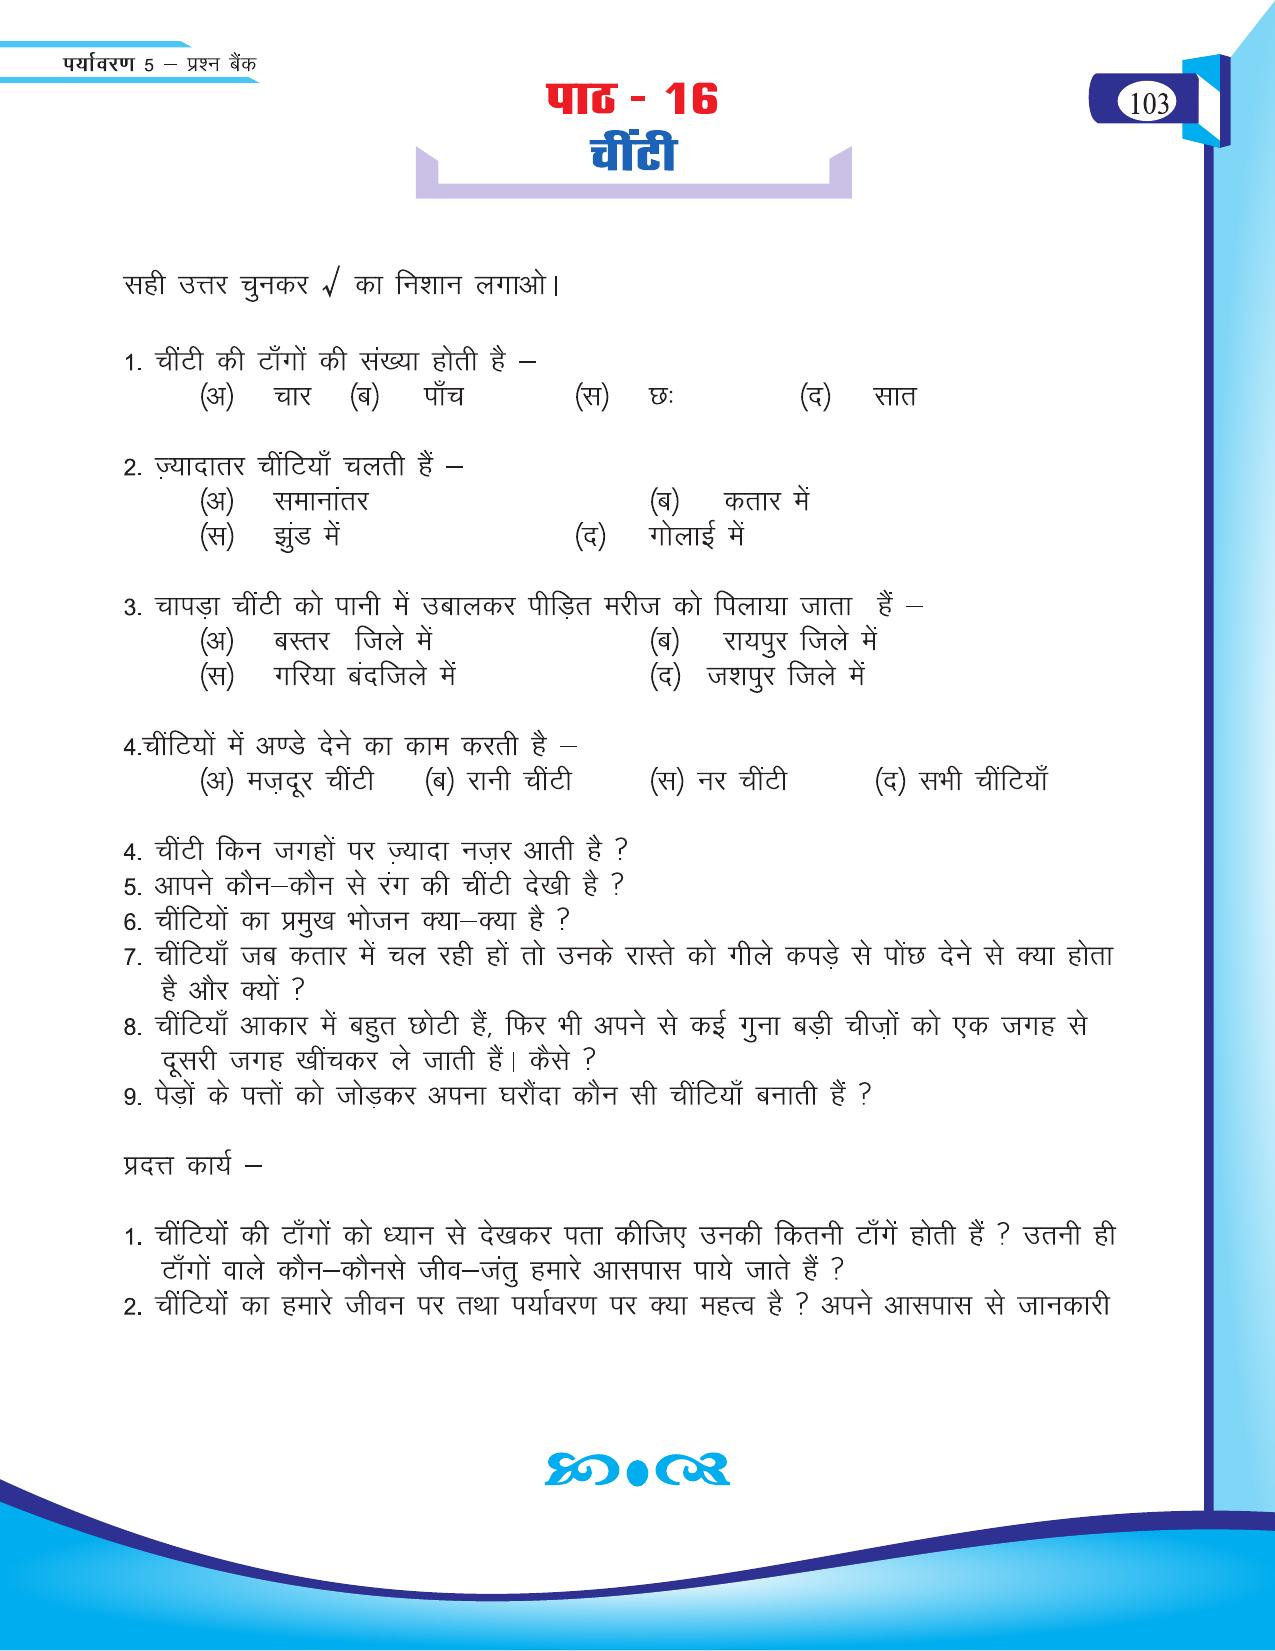 Chhattisgarh Board Class 5 EVS Question Bank 2015-16 - Page 29